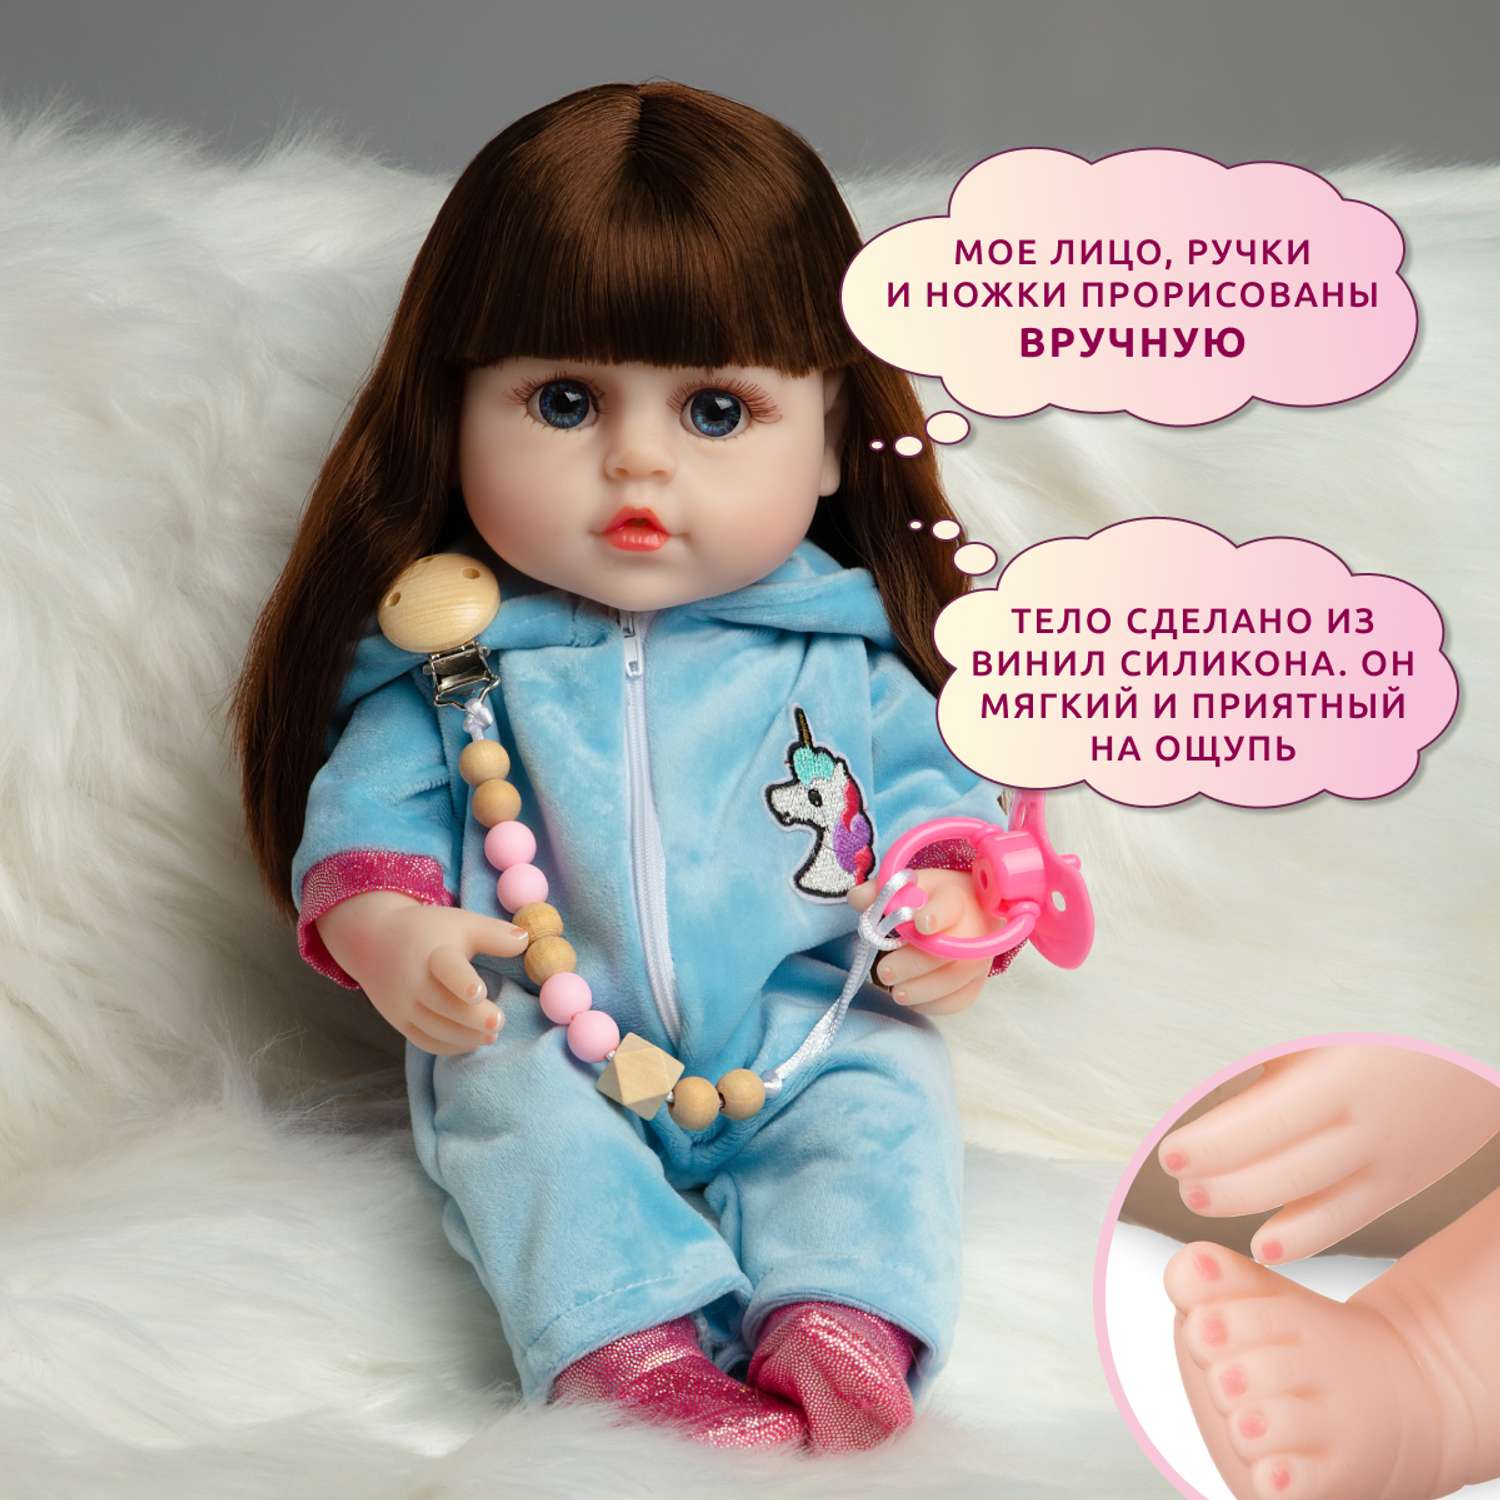 Кукла Реборн QA BABY Марта девочка интерактивная Пупс набор игрушки для ванной для девочки 38 см 3806 - фото 9